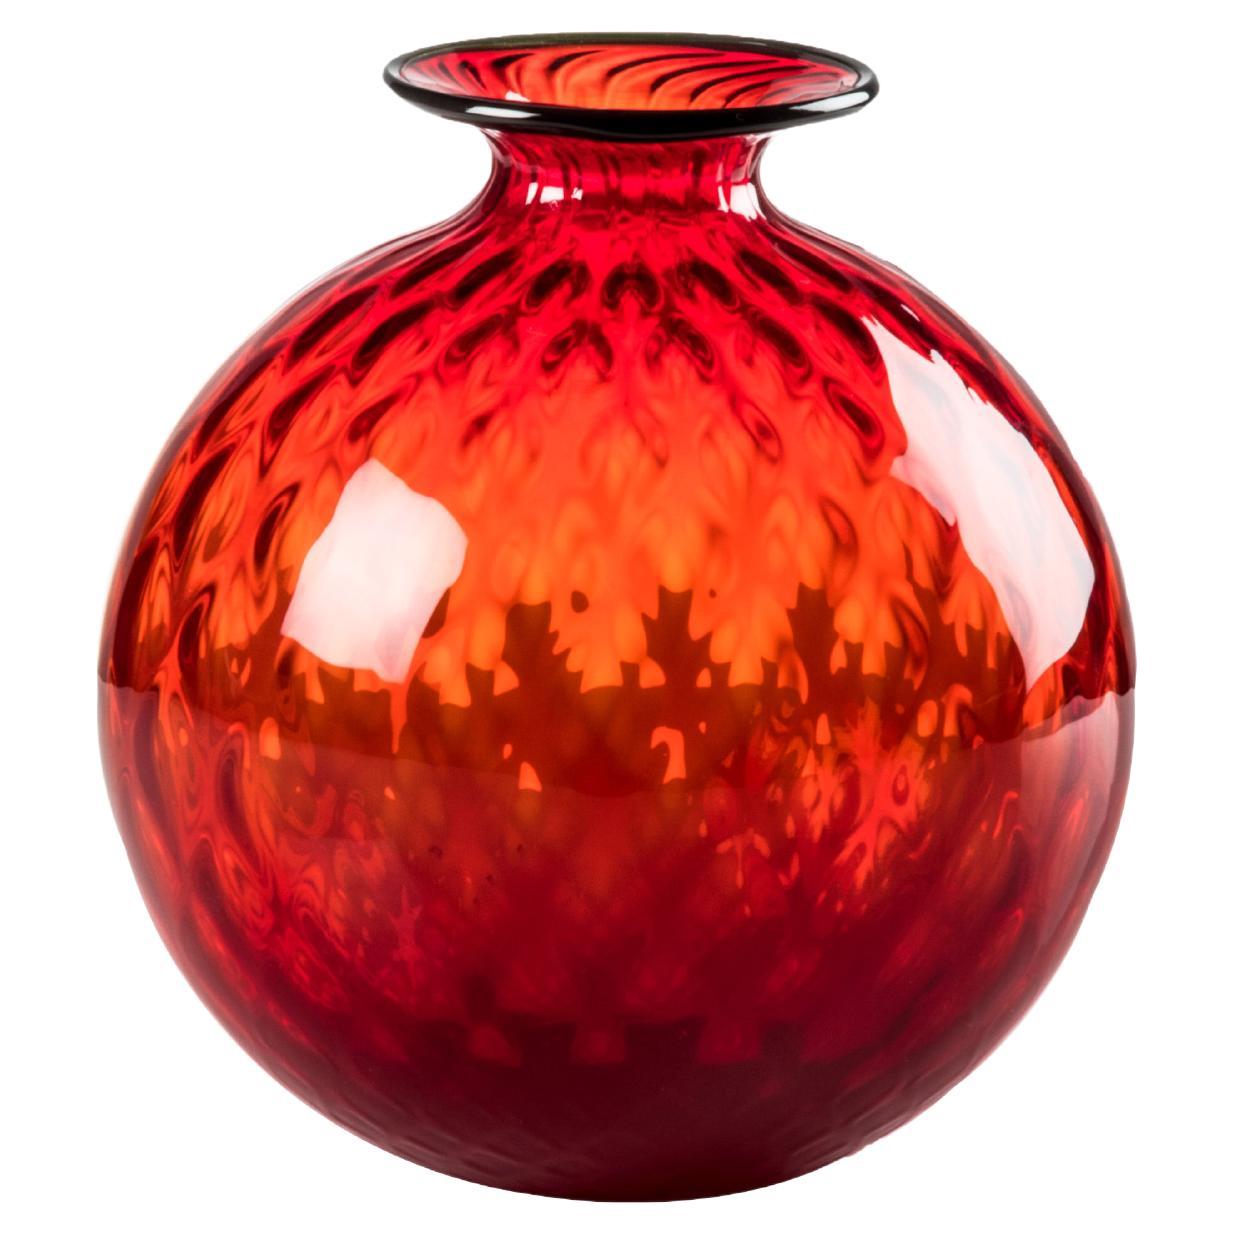 Venini Monofiore Balloton Large Vase in Red Apple-Green Thread Murano Glass